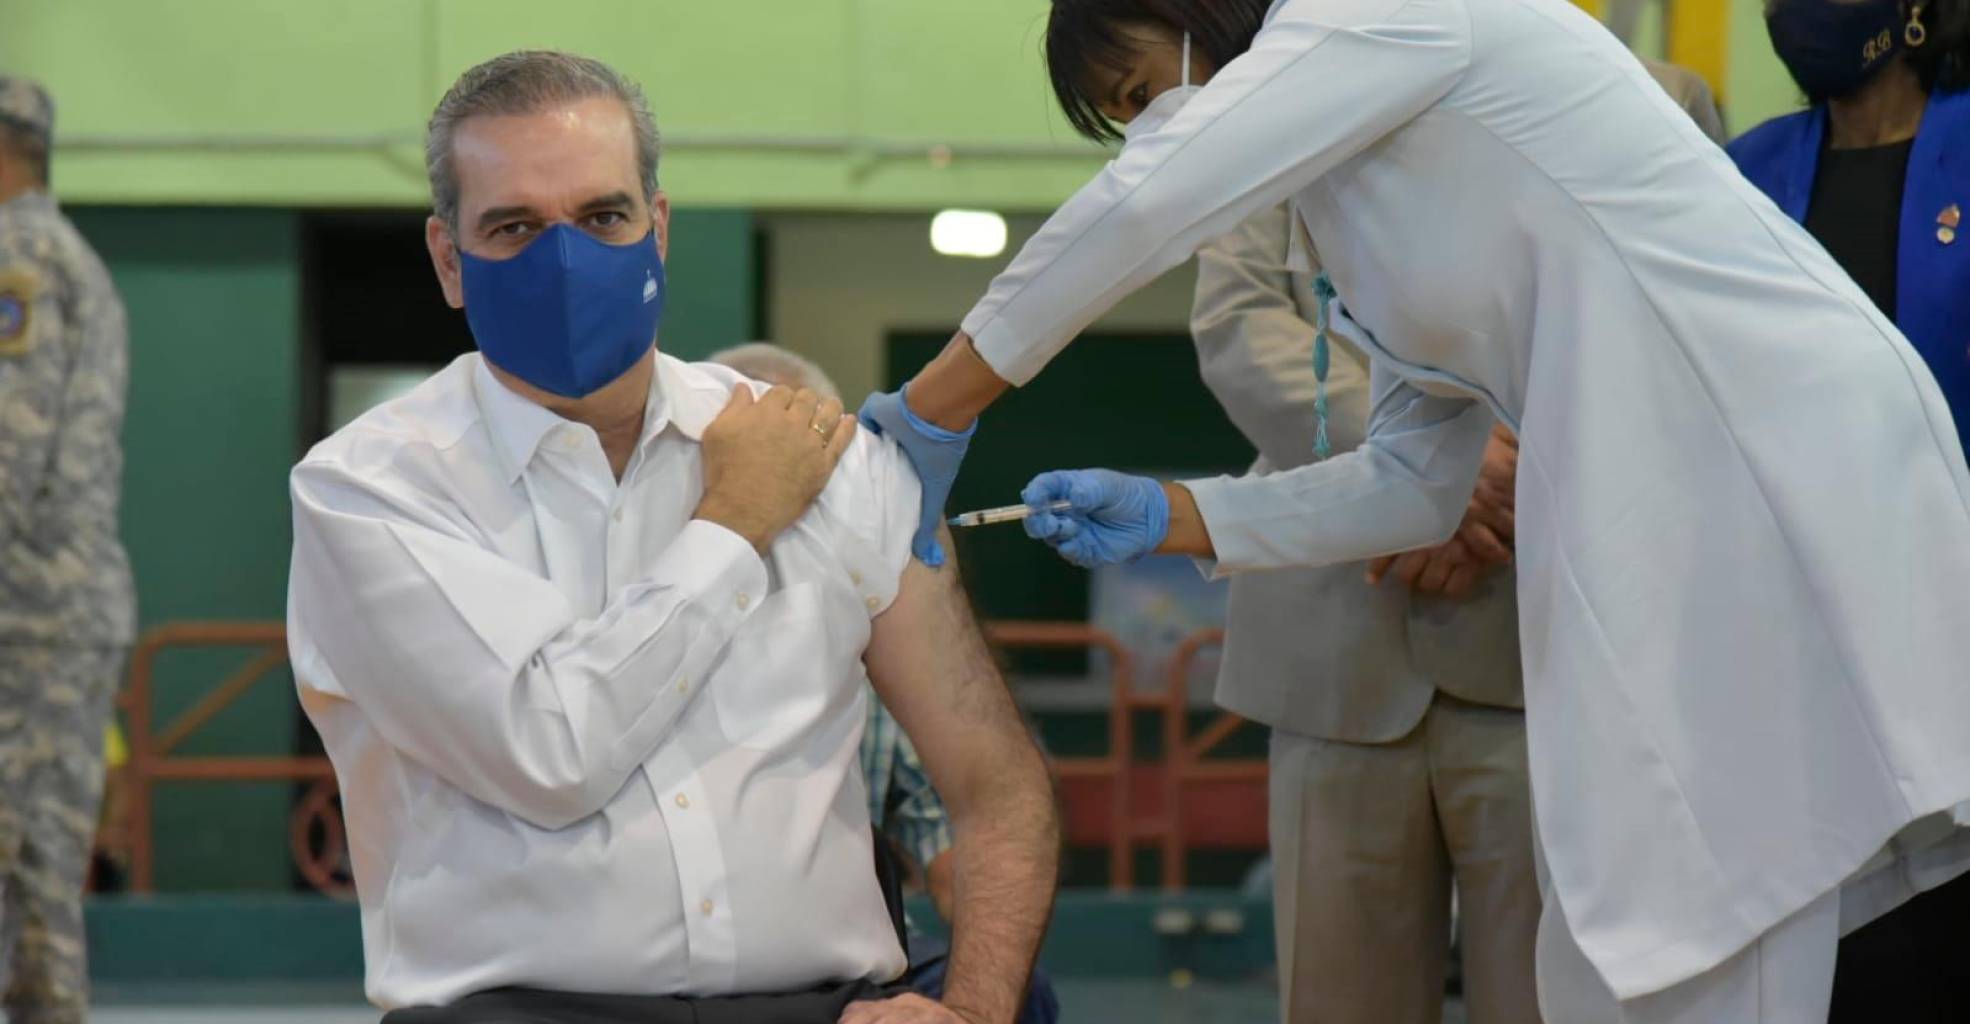 luis abinader recibe su primera dosis de la vacuna contra el convid foto dania acevedo 16317661 20210505113942